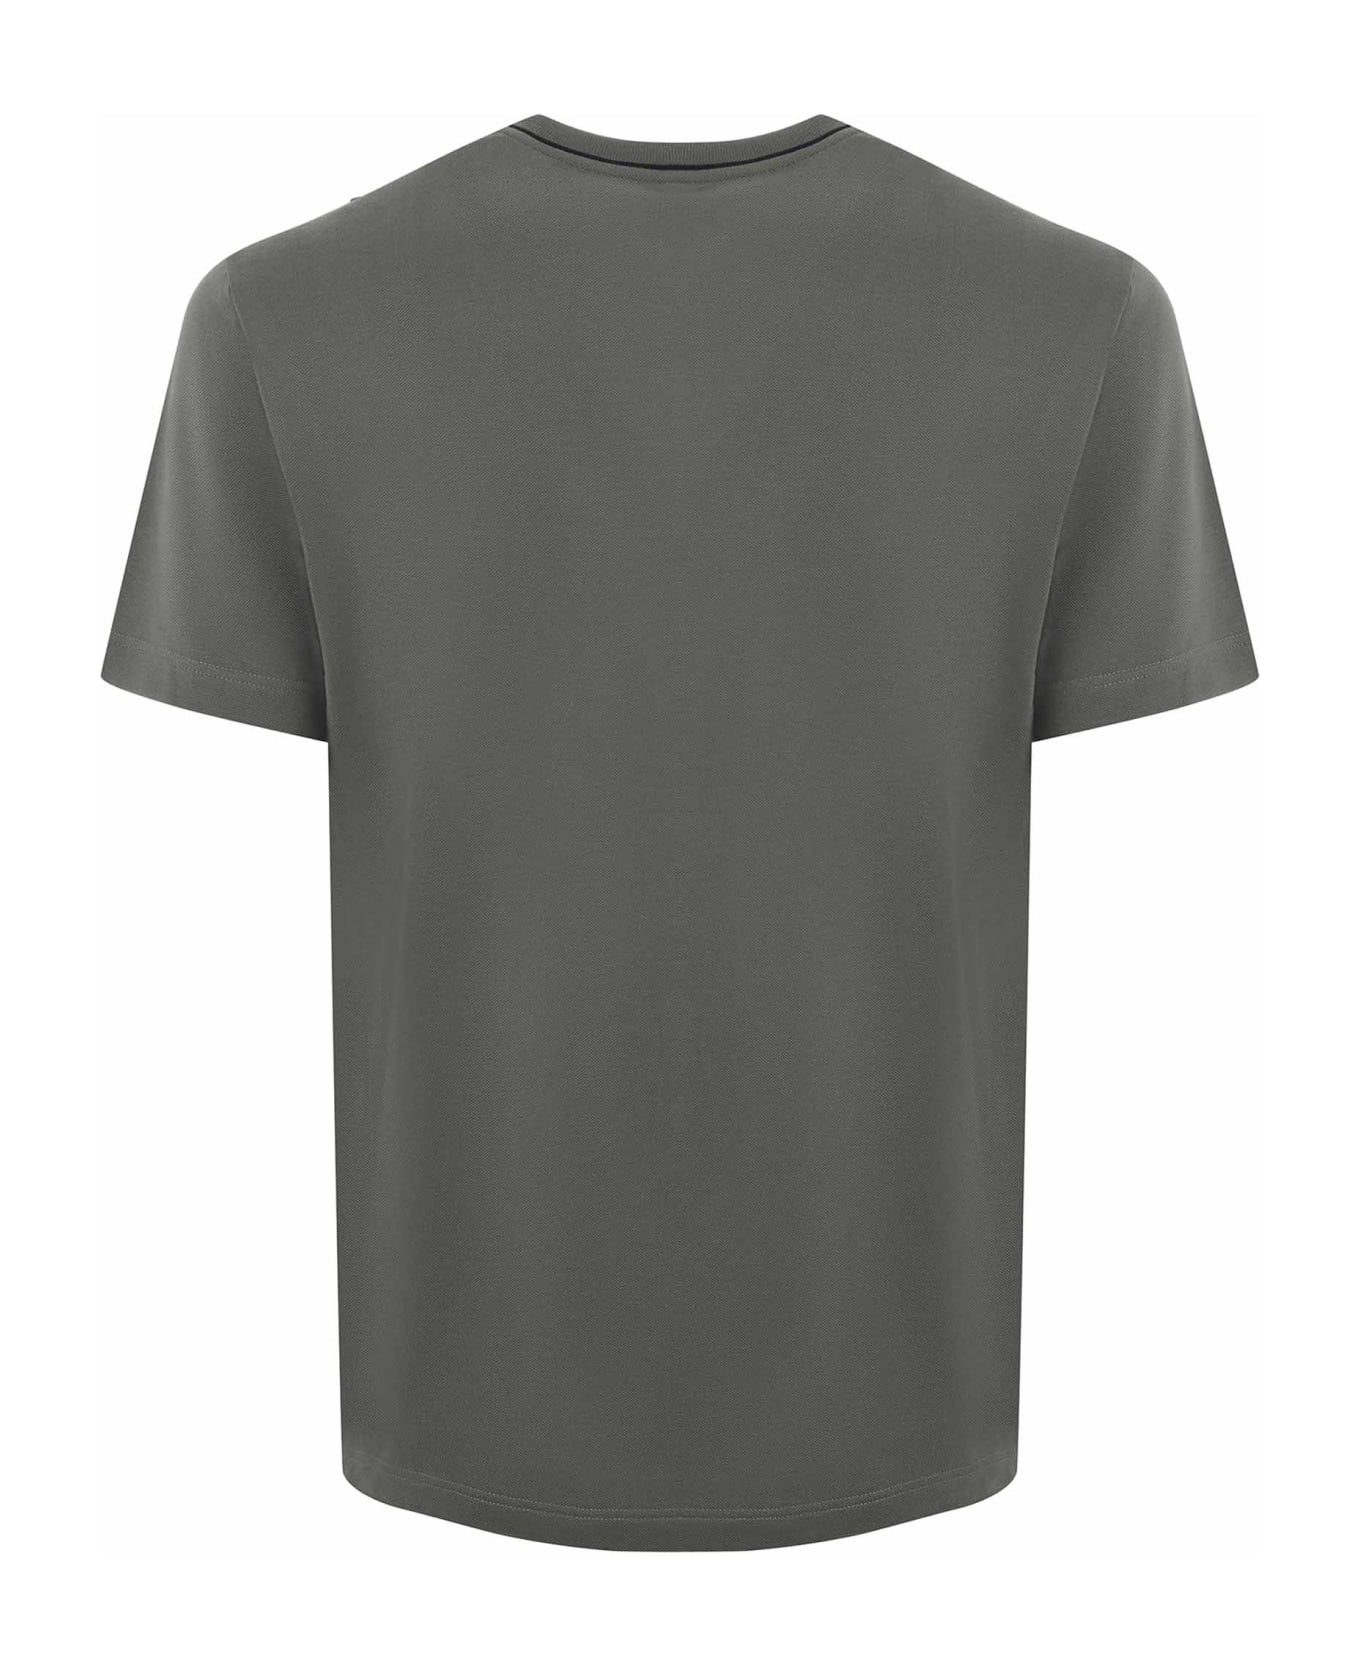 Lacoste T-shirt - Verde militare